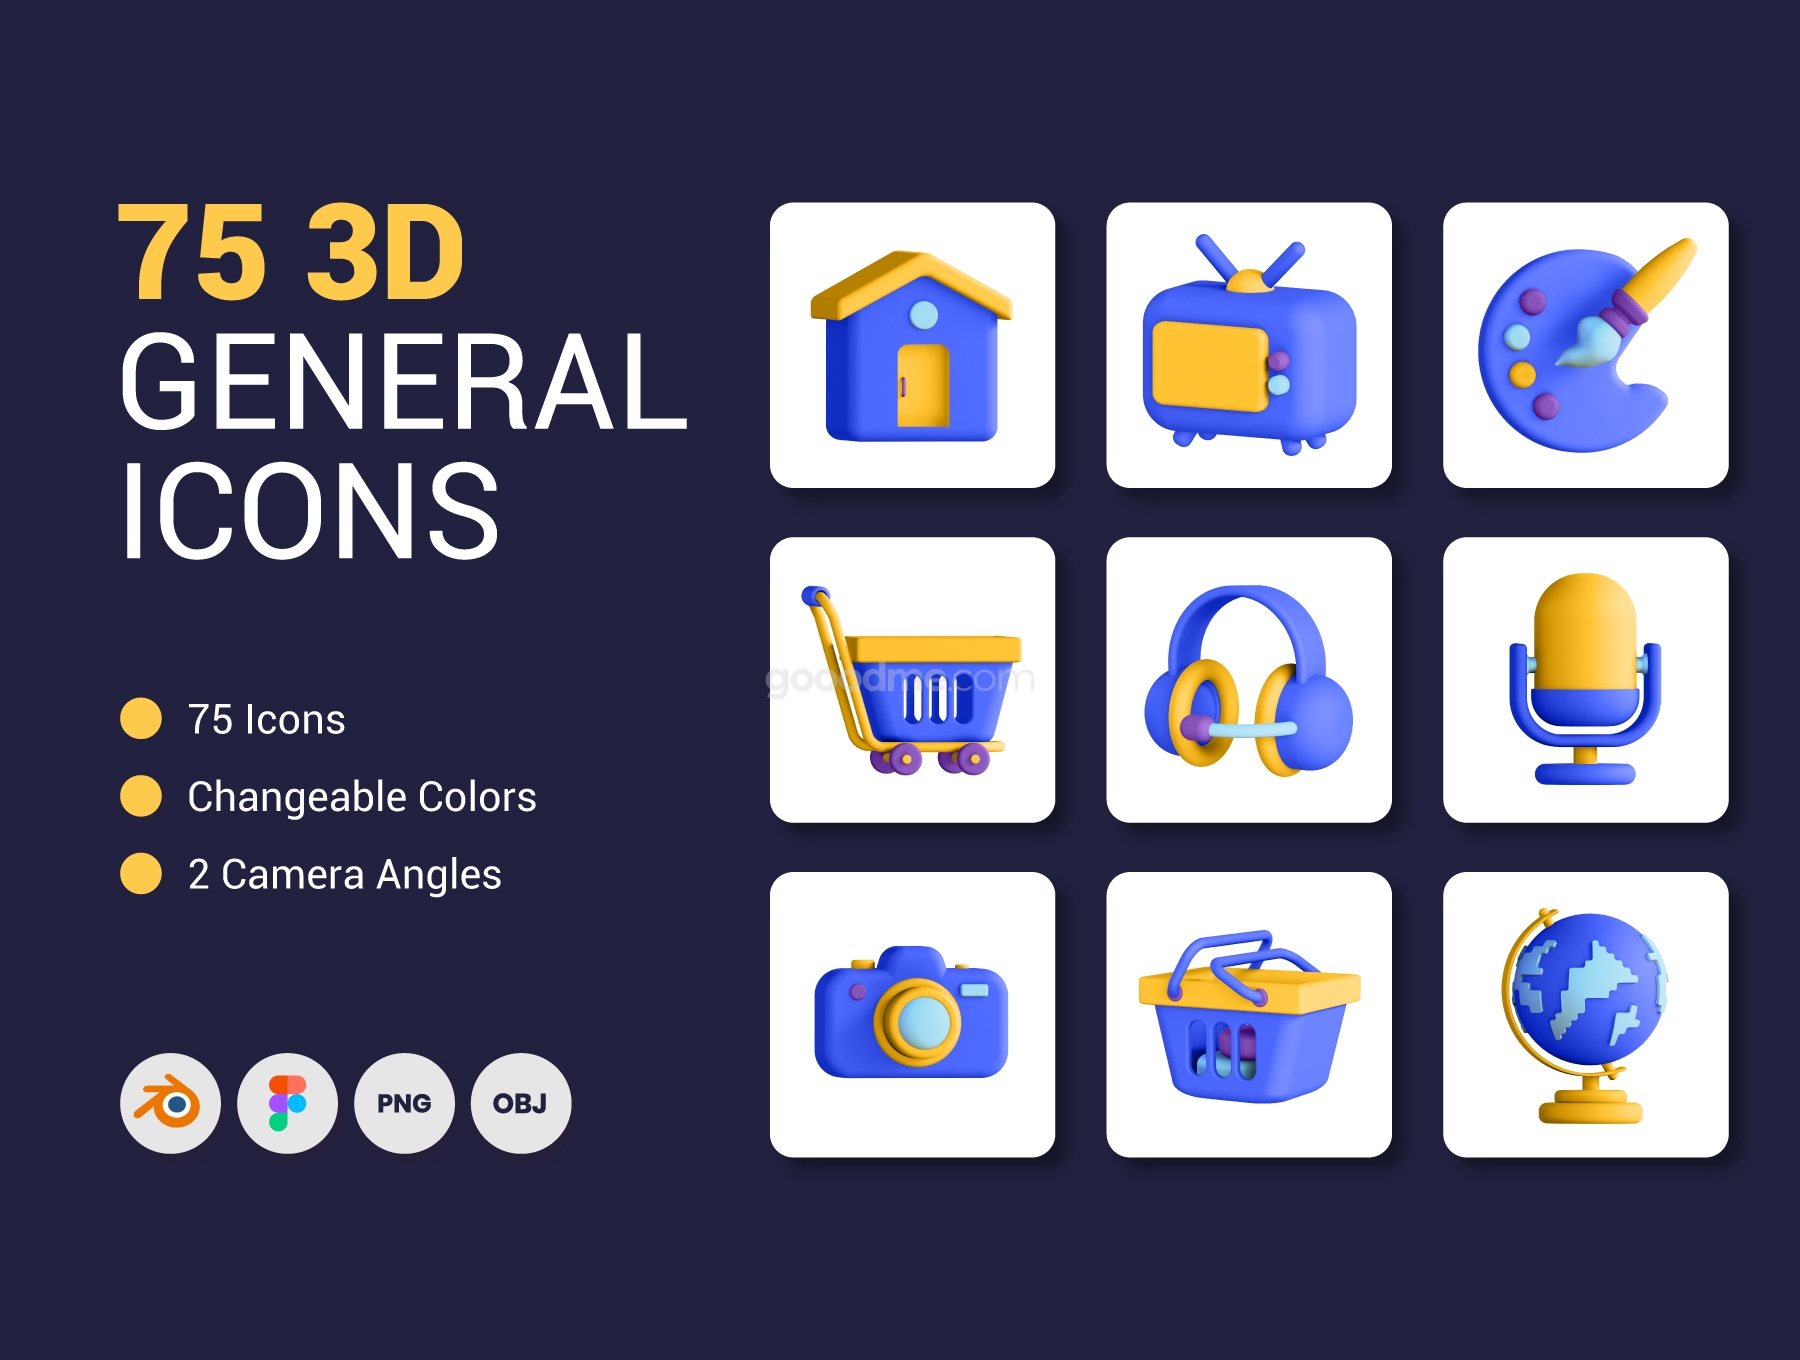 75 个高级 3D 常用UI设计图标75 3D General Icons